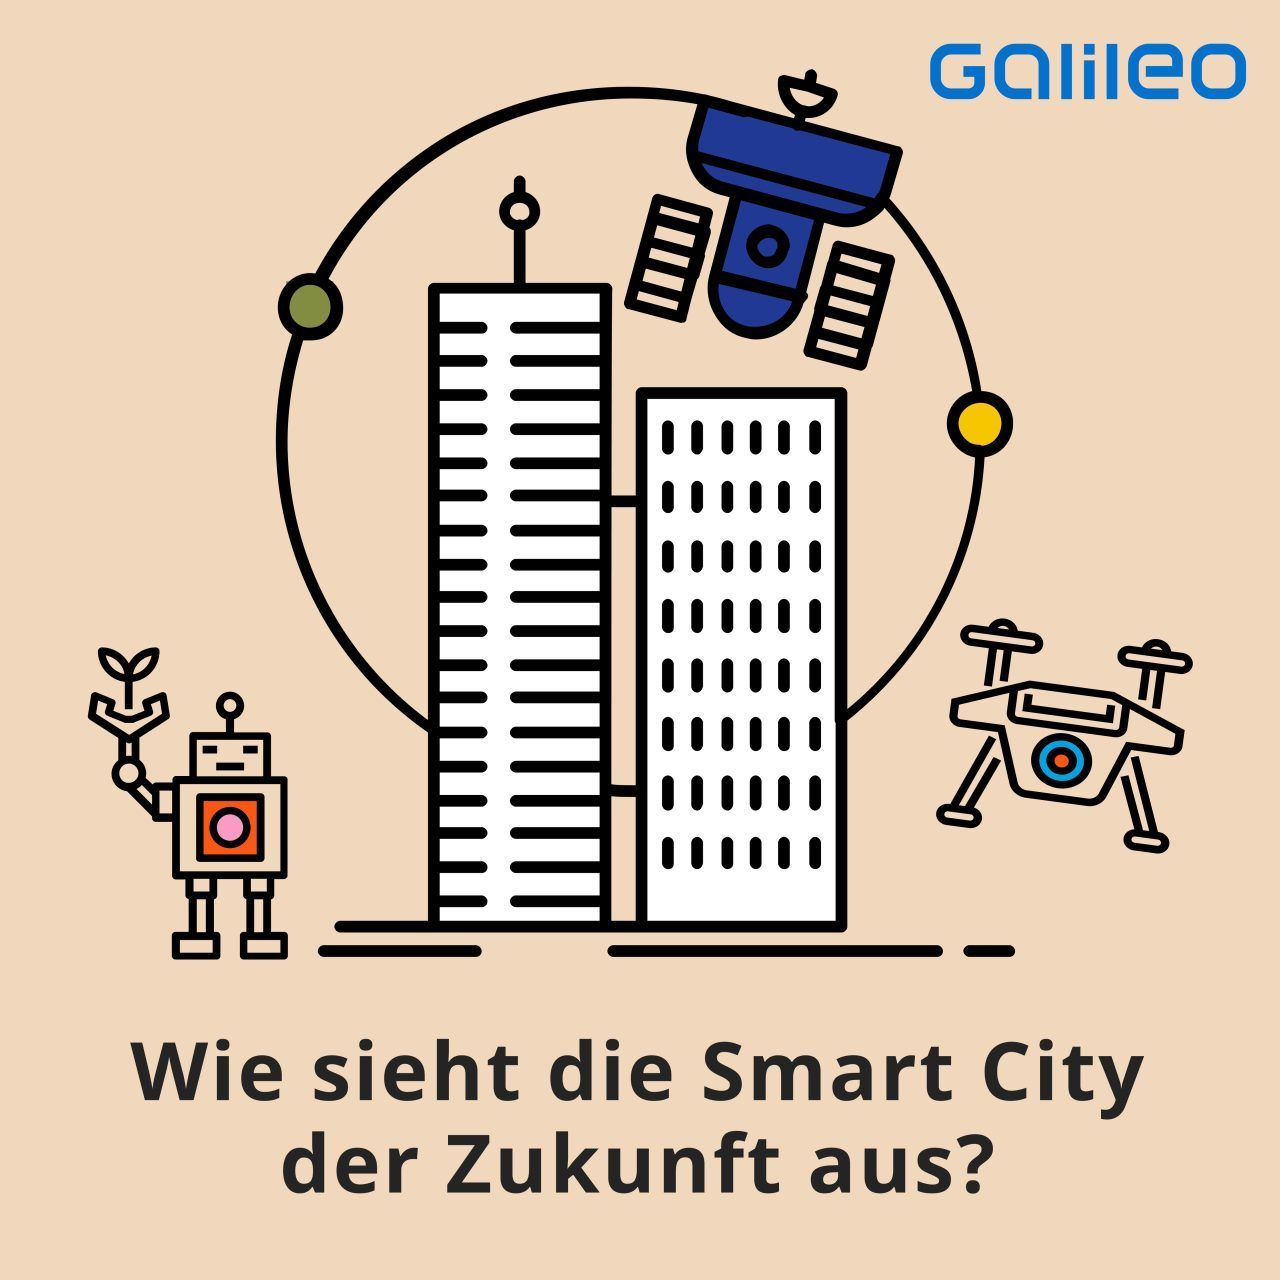 Smart City: Das können die Städte der Zukunft